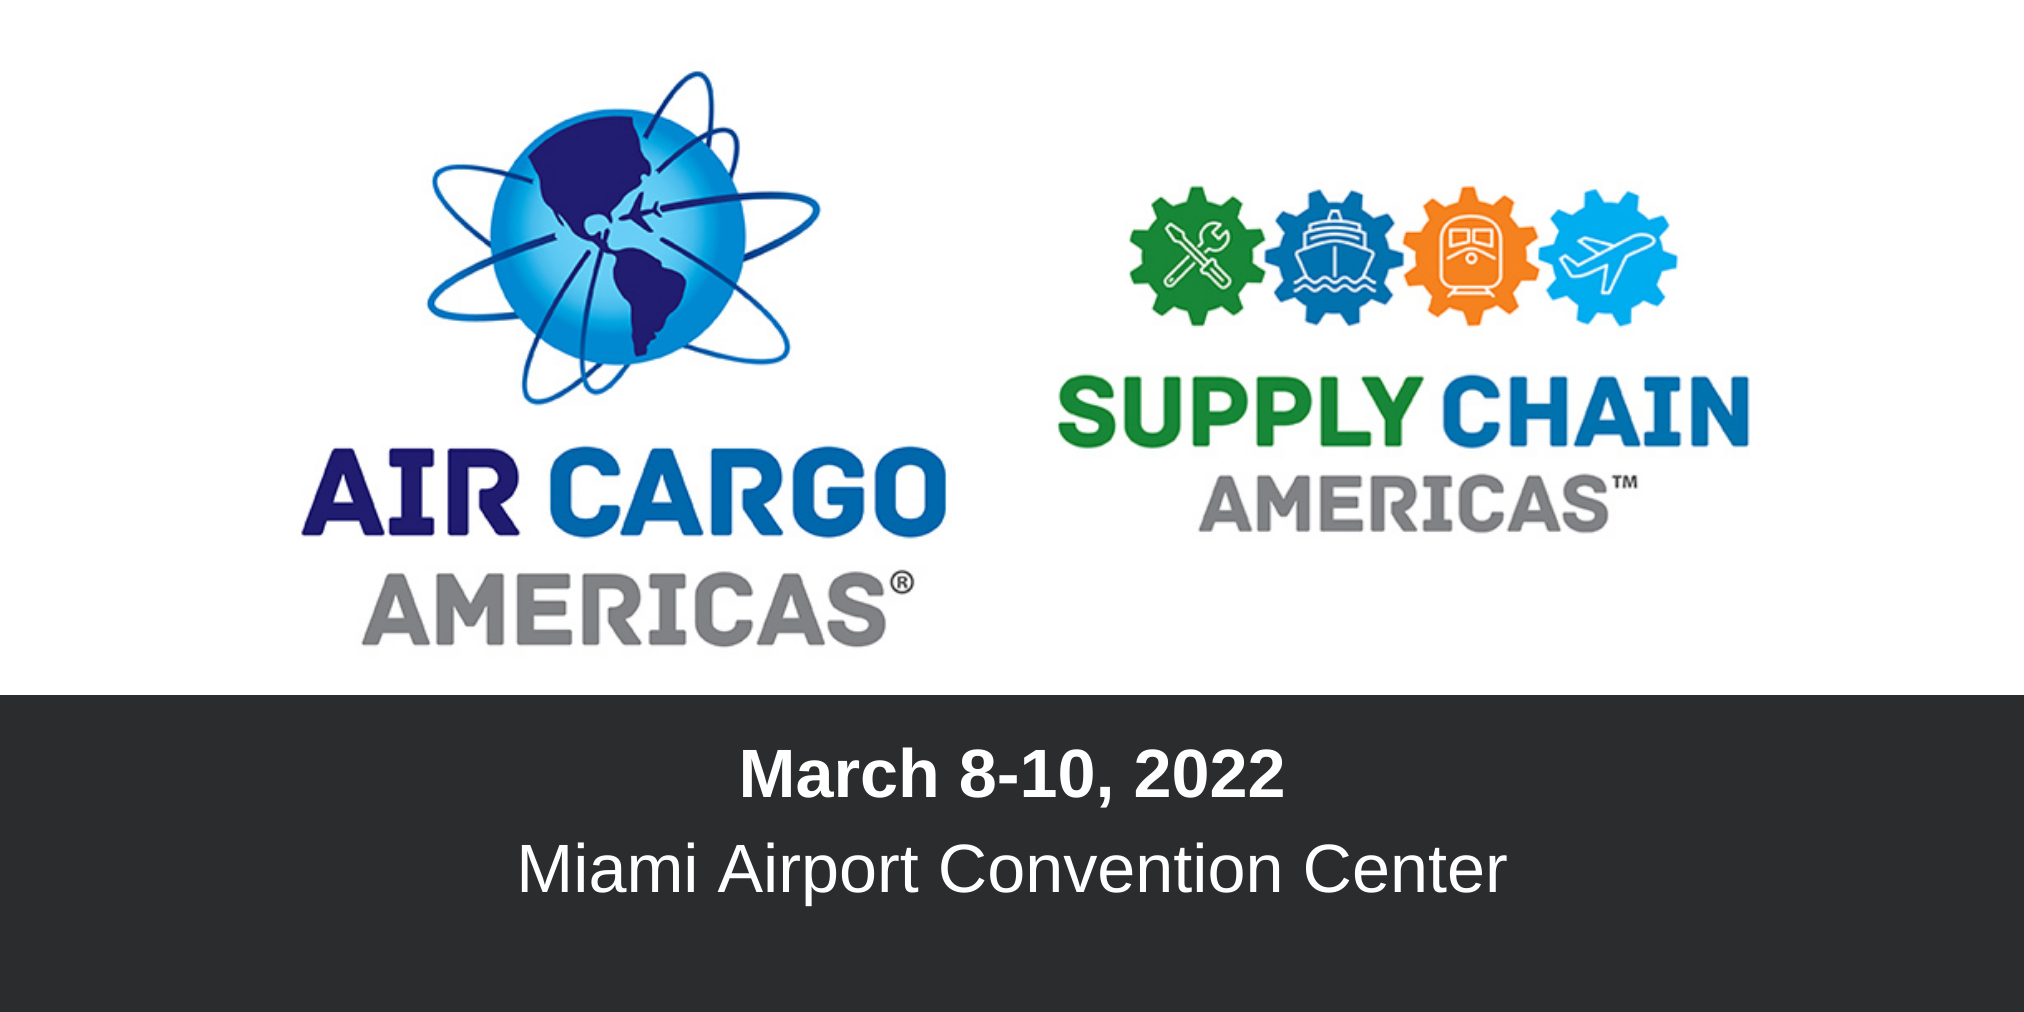 De Air Cargo Americas/Supply Chain Americas Exhibition is een evenement gericht op innovatie en veerkracht in de wereldwijde supply chain.